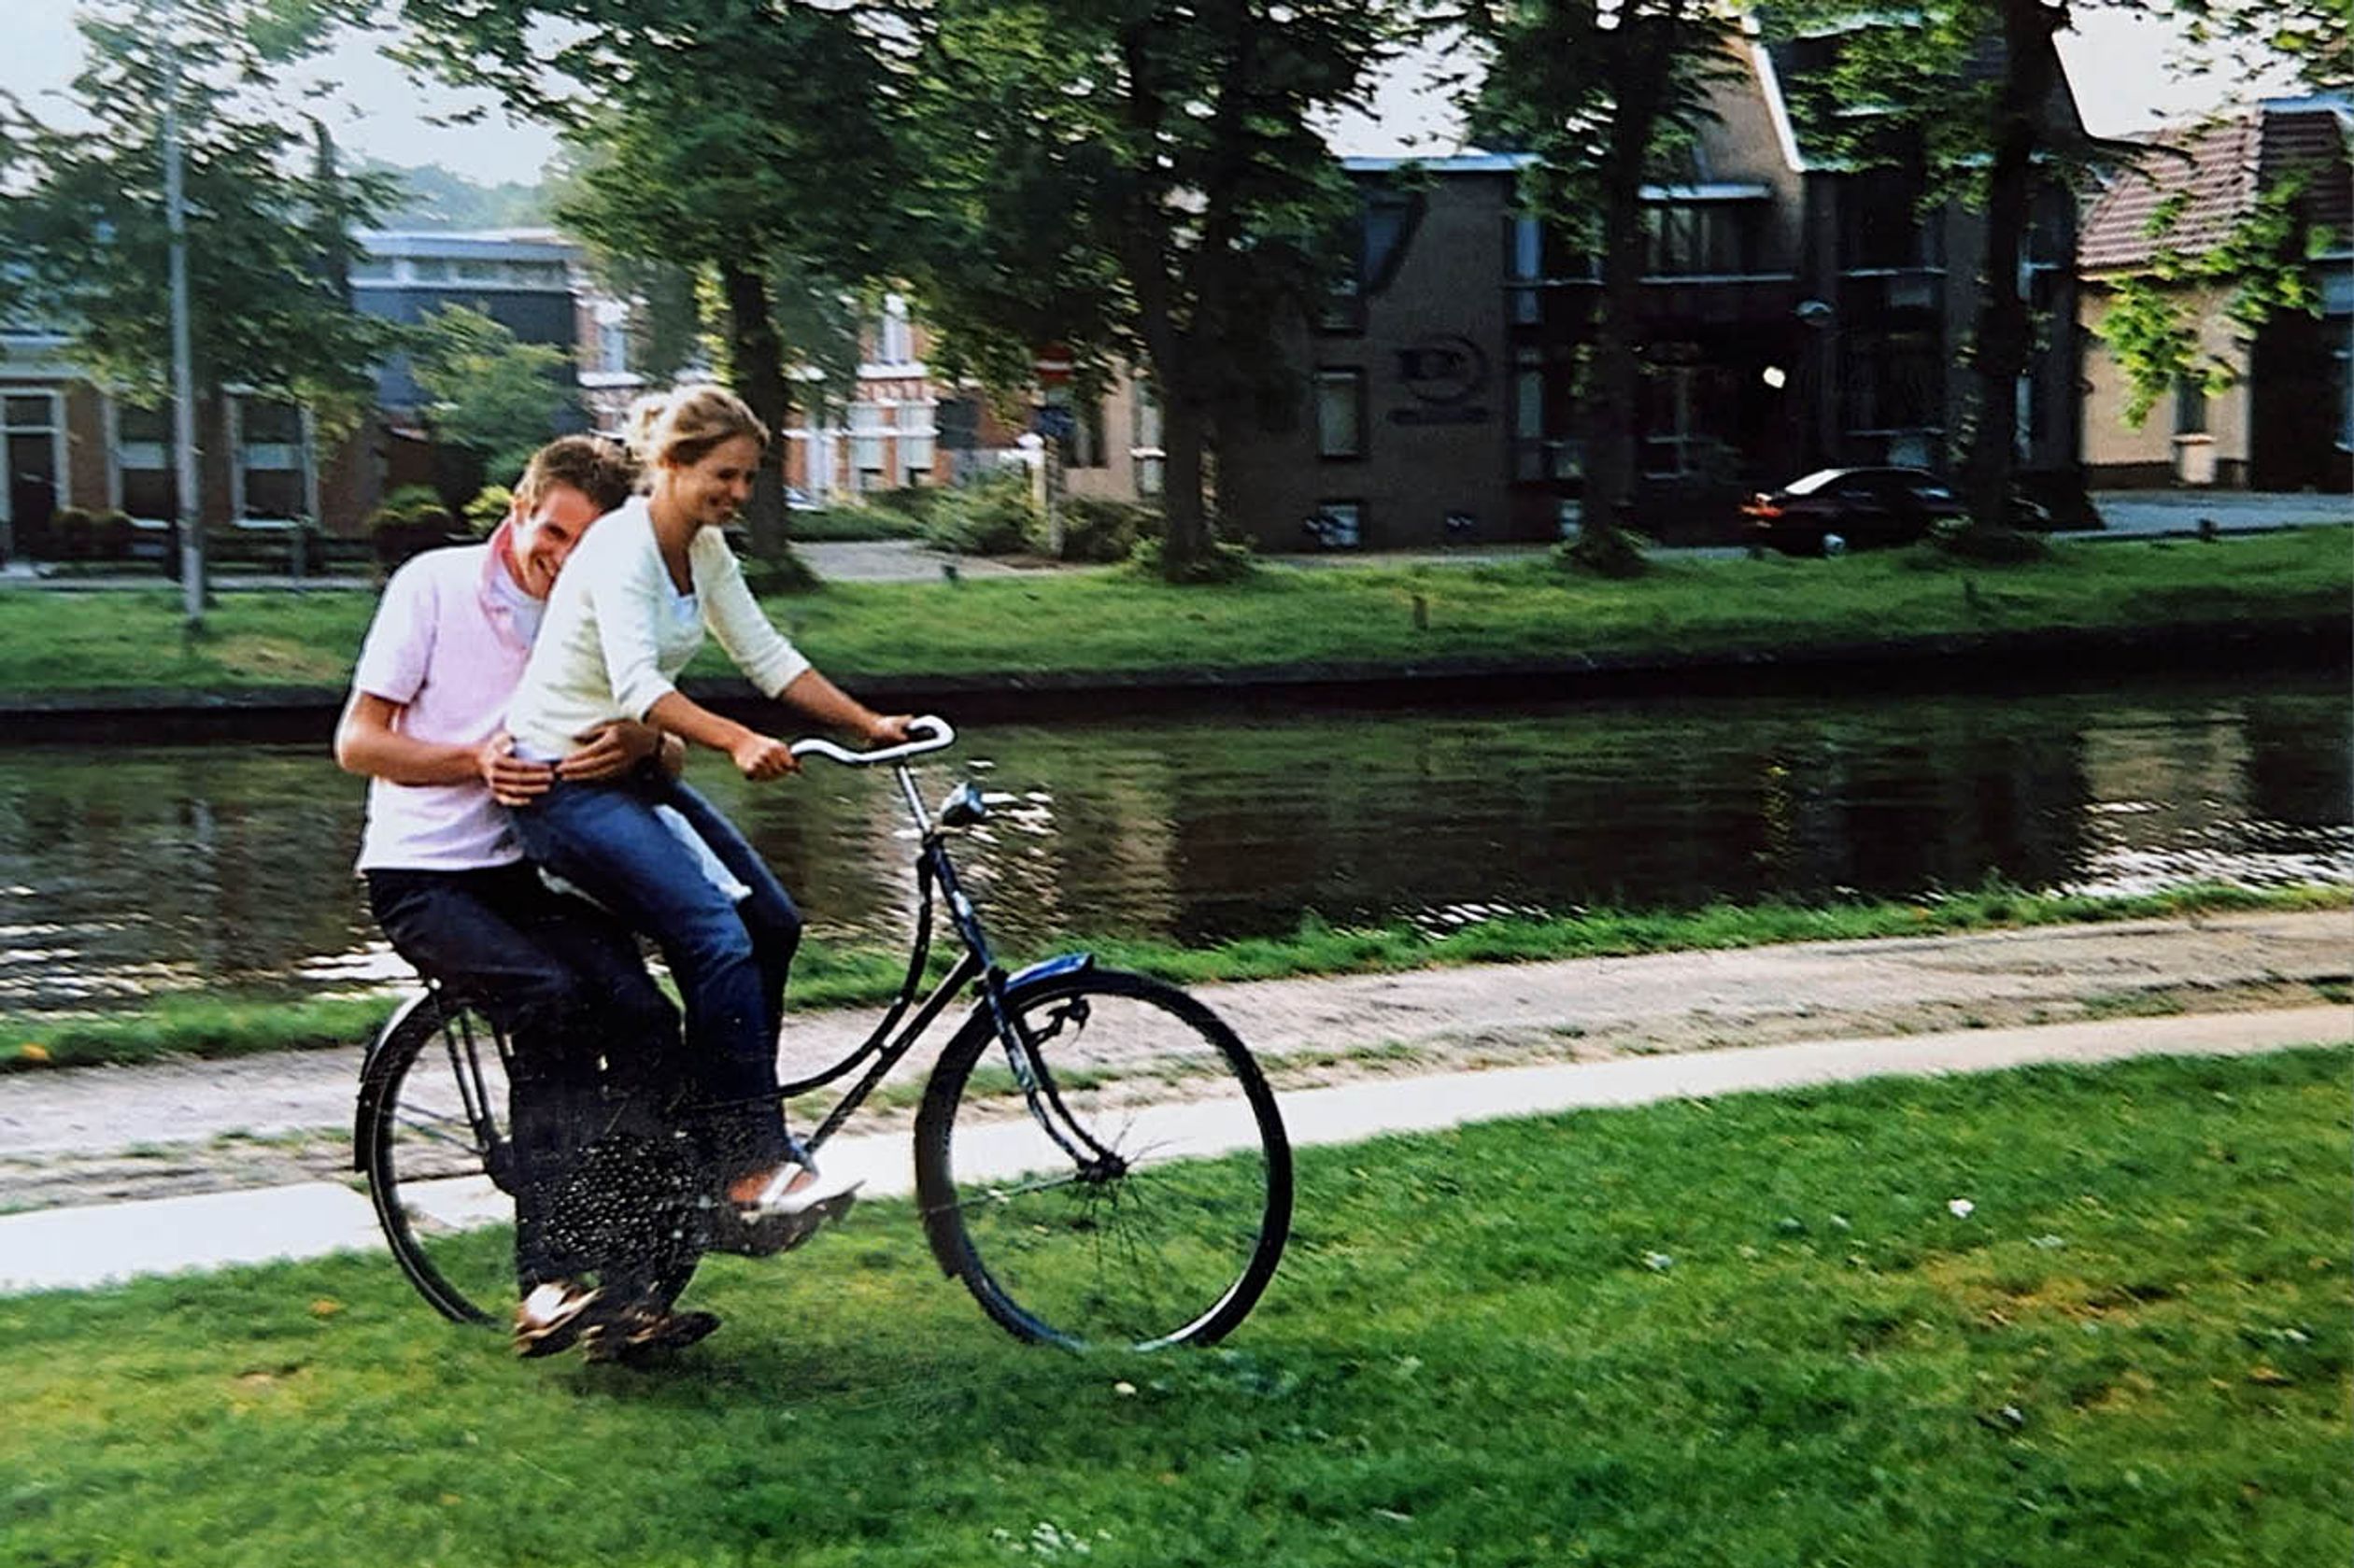 Griëtte met haar man Duurt op de fiets